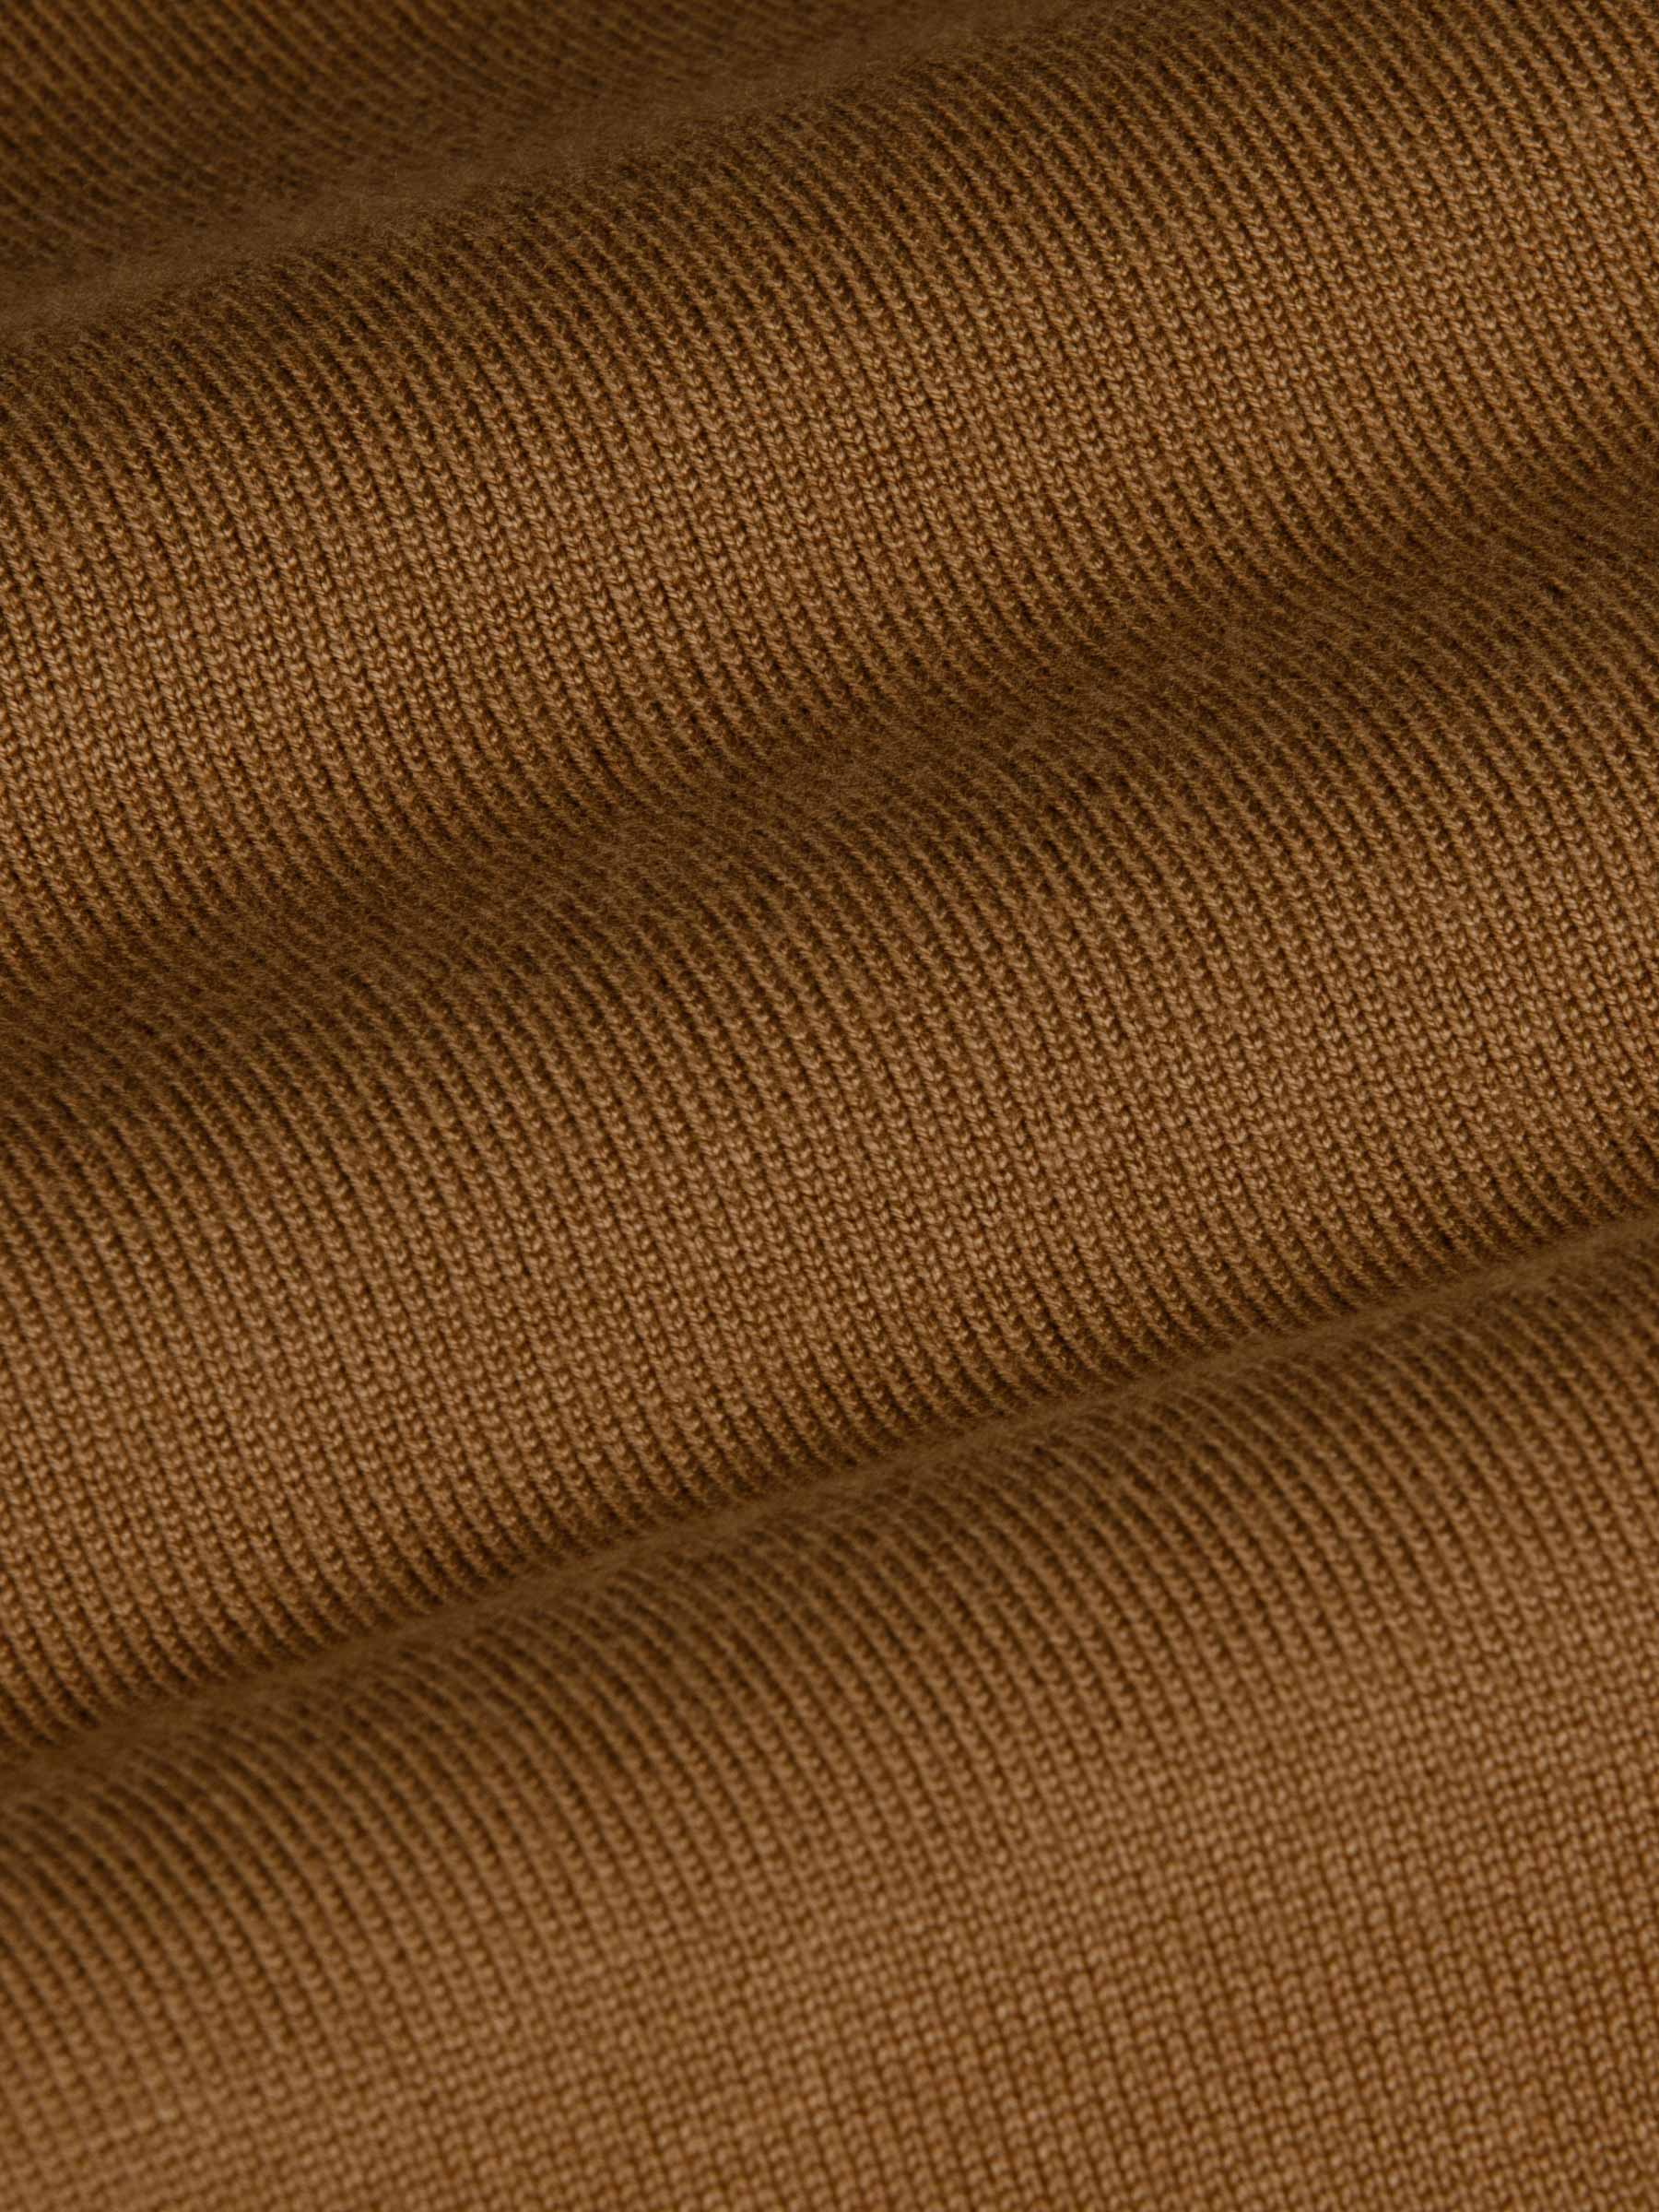 Siena Round-Necked Brown Sweater